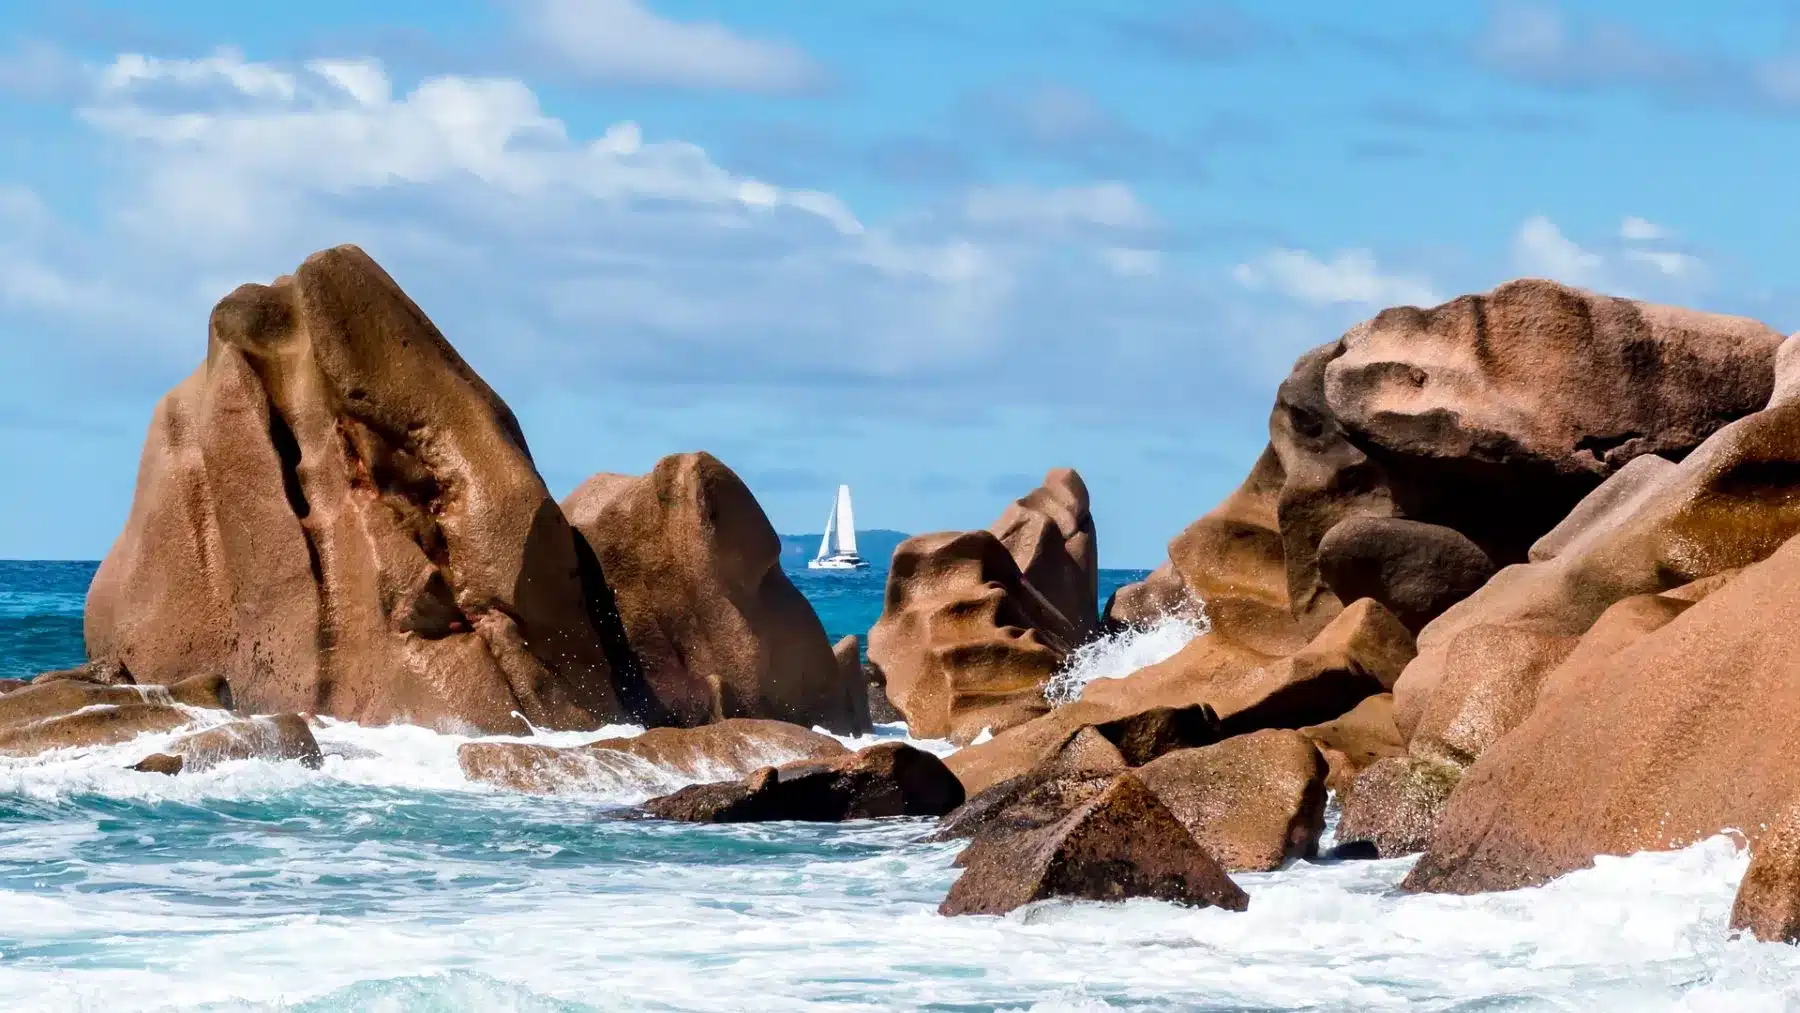 Wellen schlagen gegen große, glatte Felsbrocken an einer sonnenbeschienenen Küste. Unter klarem Himmel ist am blauen Ozeanhorizont eine einsame Segelyacht zu erkennen.